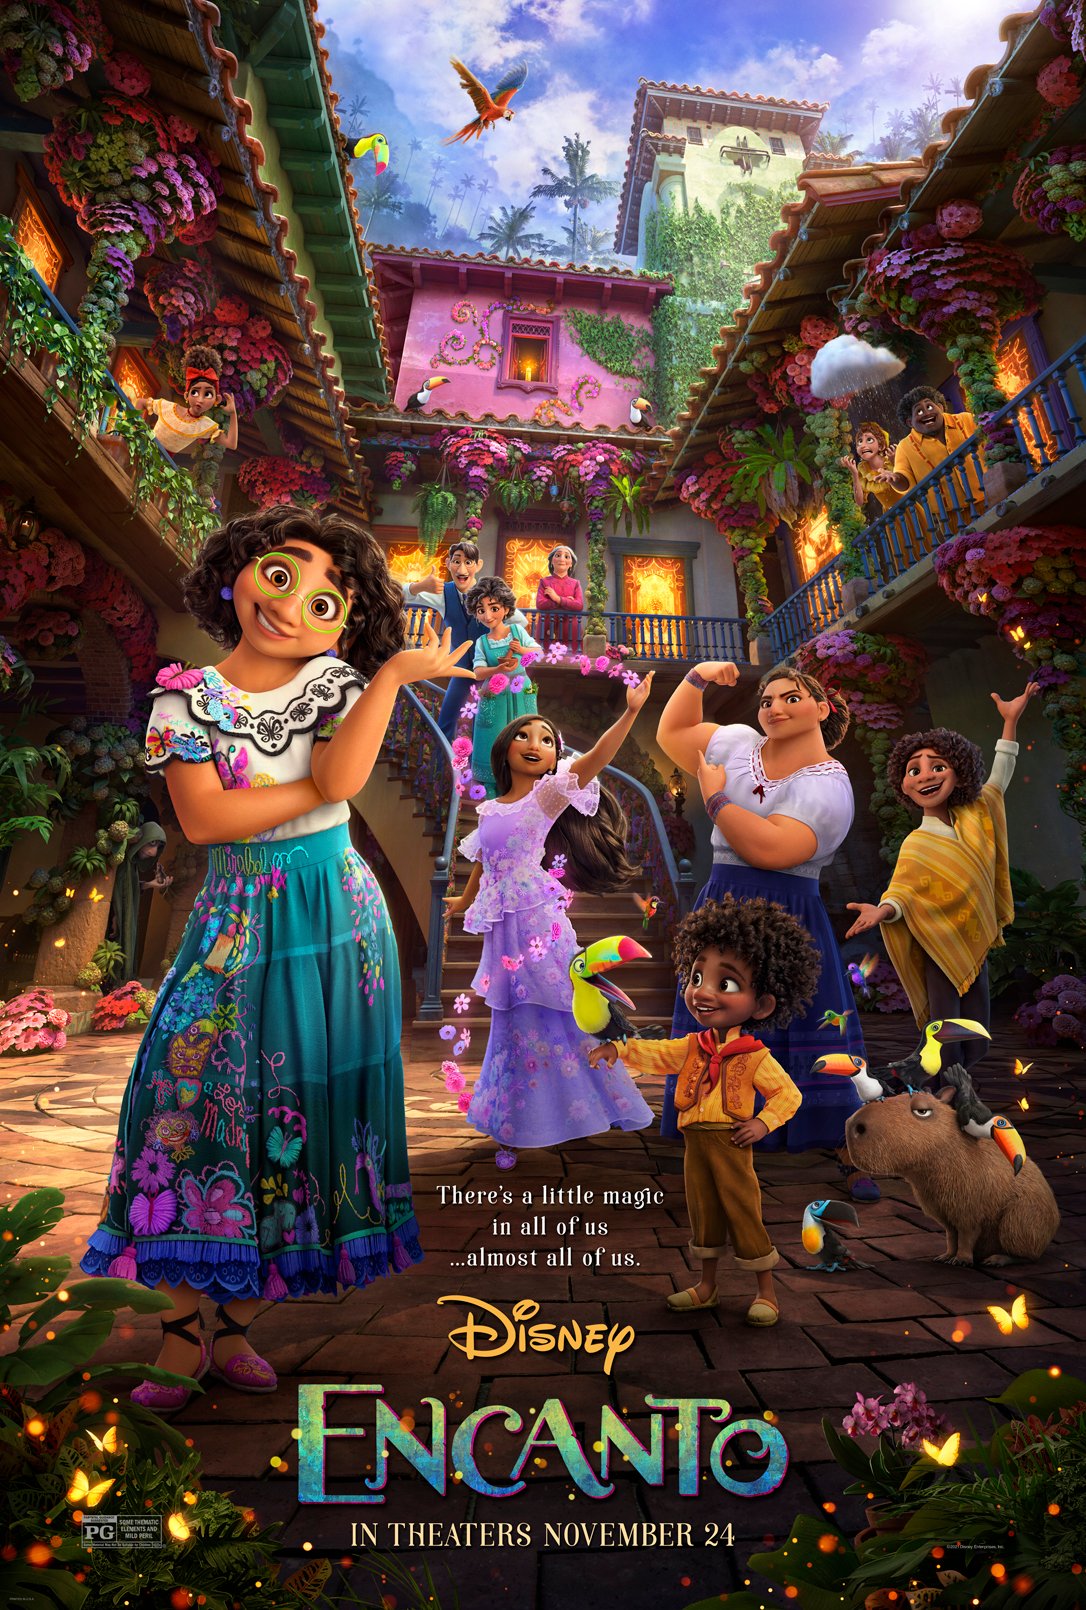 Disney reveló nuevo tráiler y póster de Encanto, la película inspirada en  Colombia - Infobae